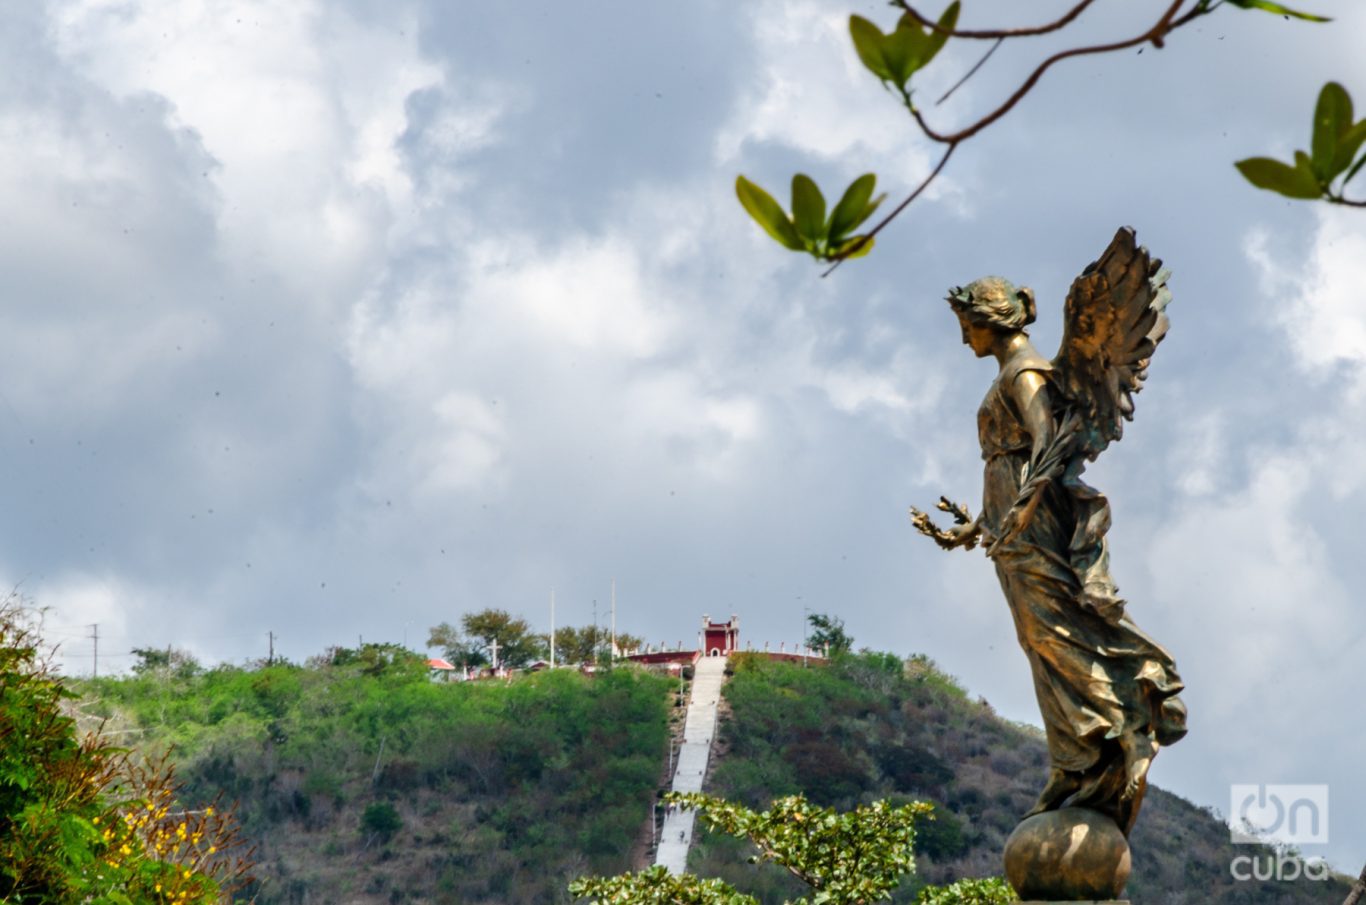 Dos iconos de Holguín: El Angelote, estatua emplazada en el parque San José y detrás, la Loma de la Cruz. Foto: Kaloian.